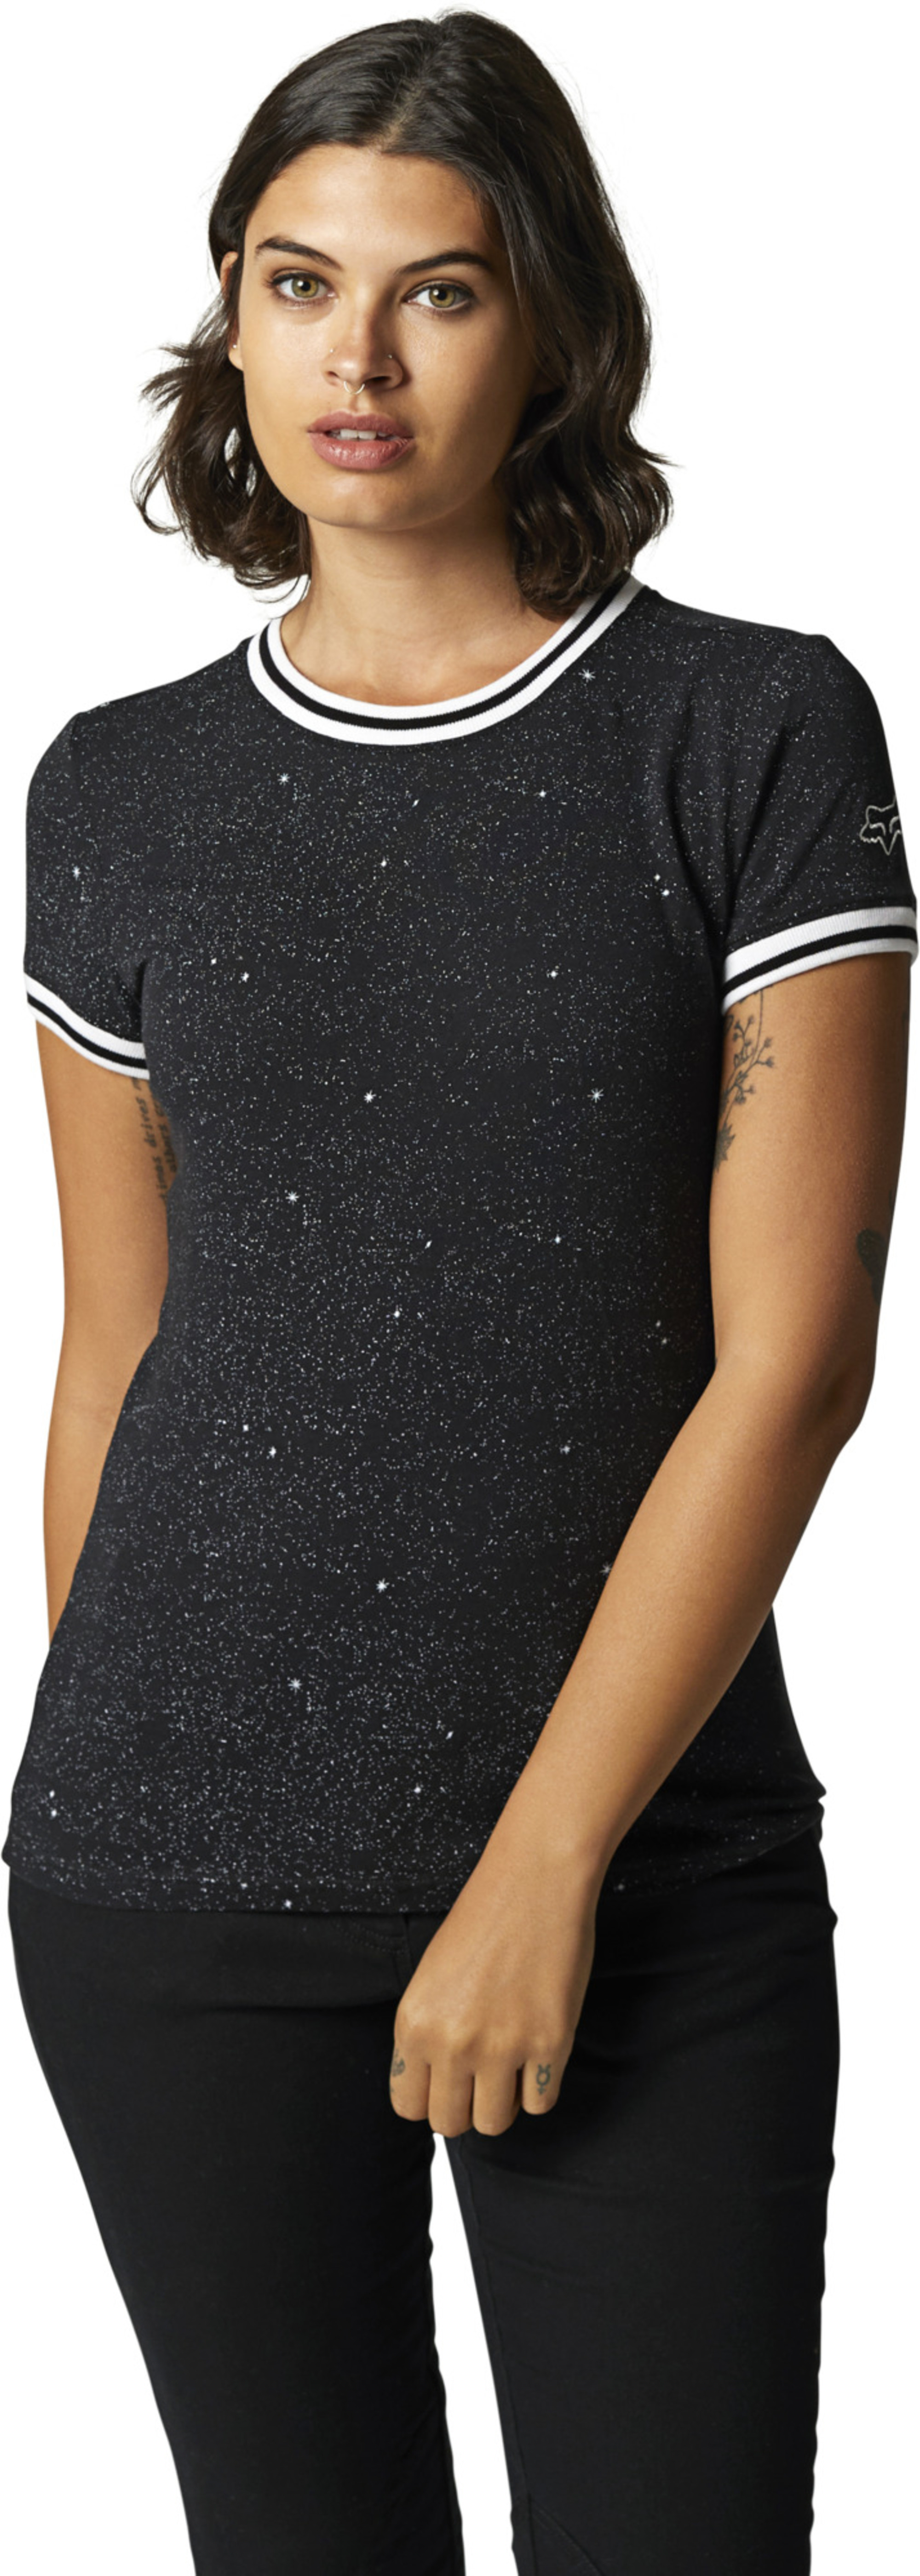 mode femmes chandails t-shirts par fox racing pour constellation